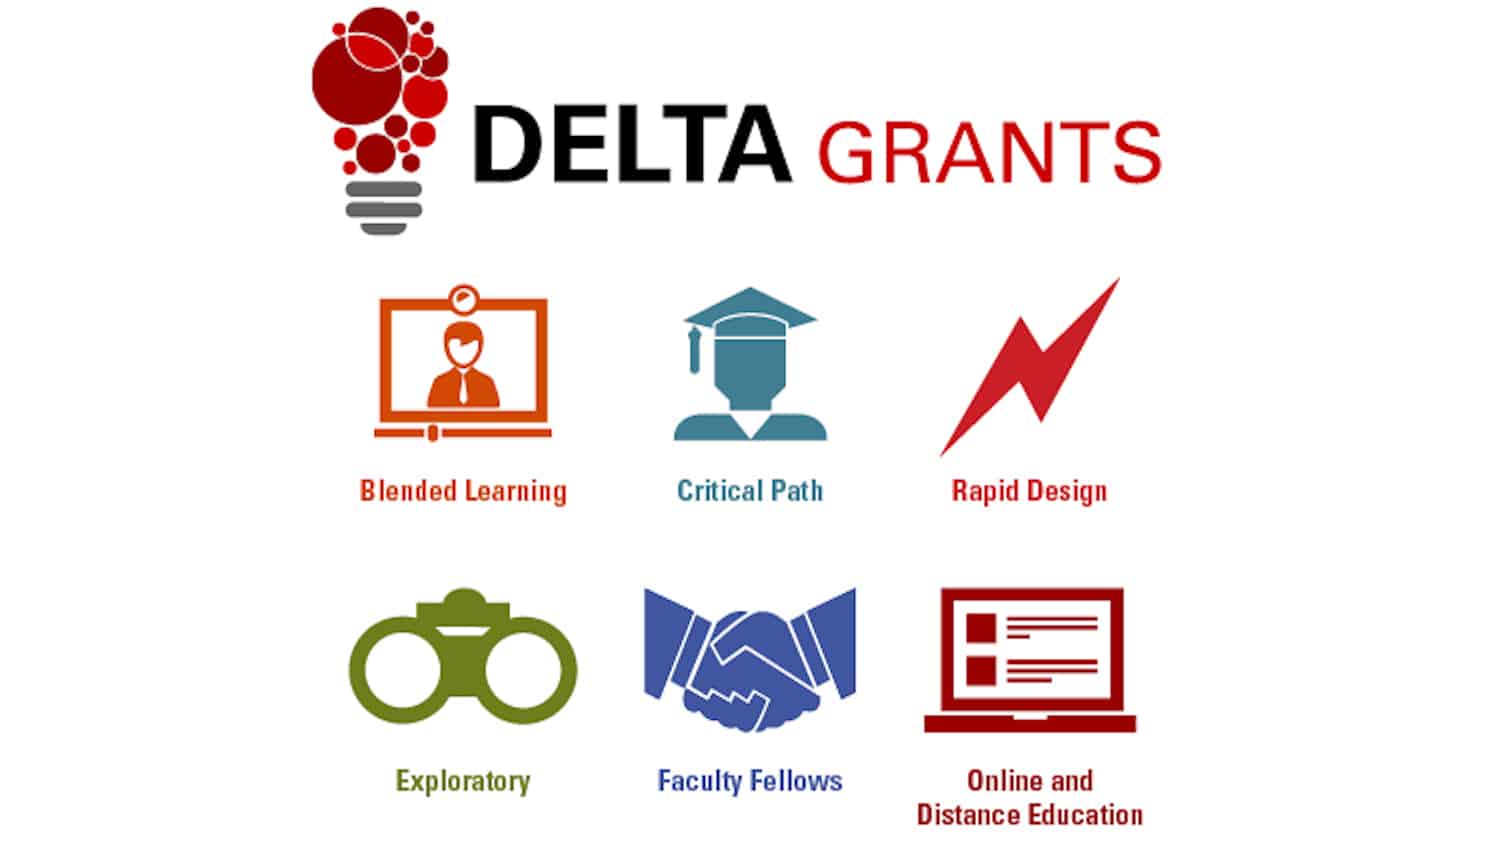 DELTA grants